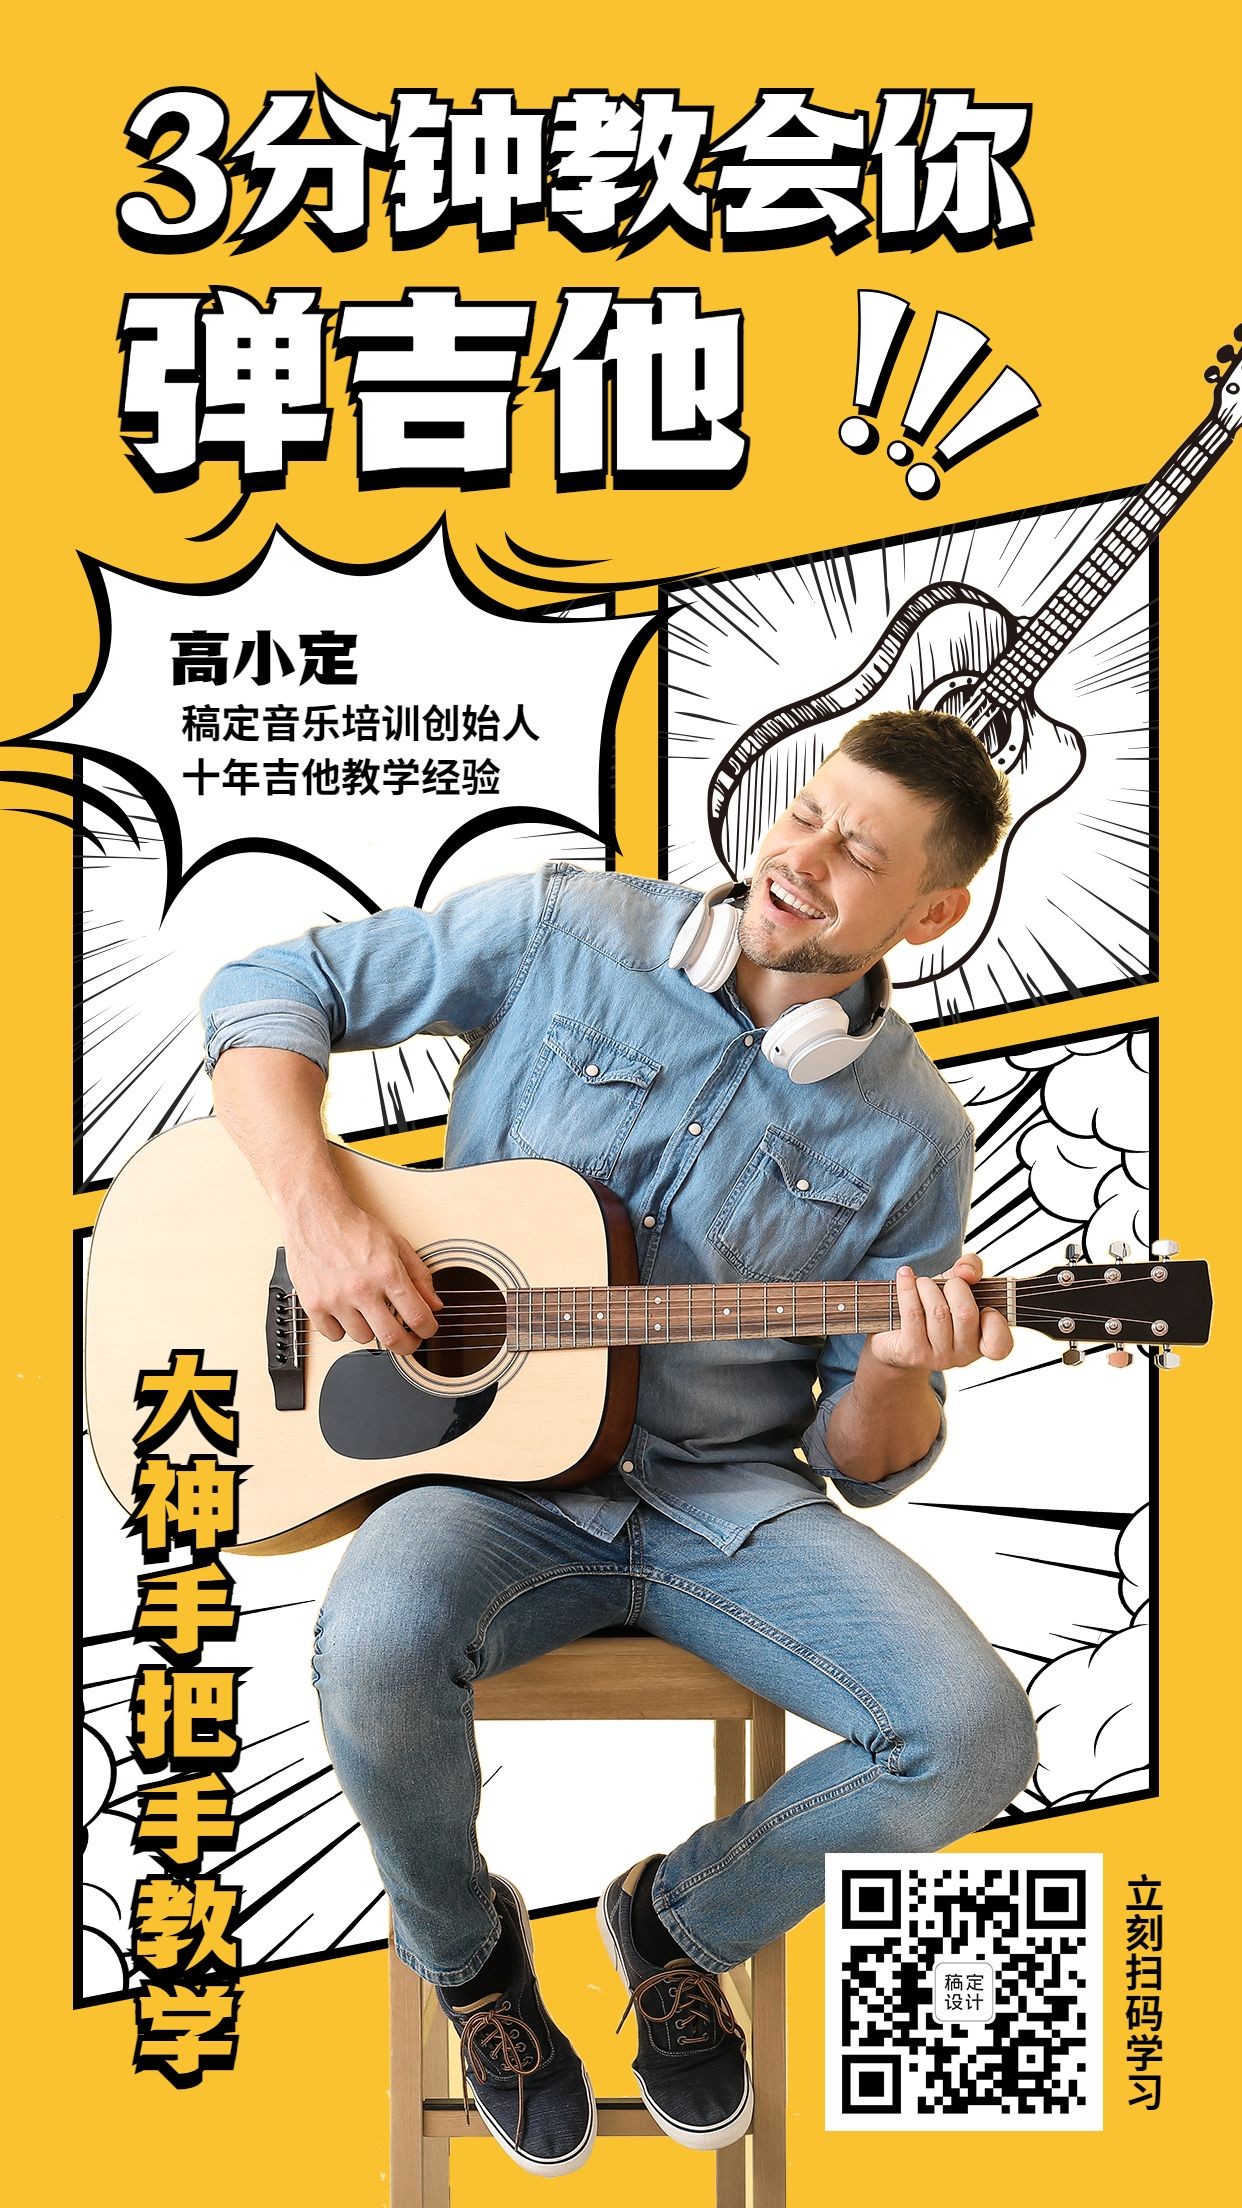 吉他教程综艺漫画风格手机海报